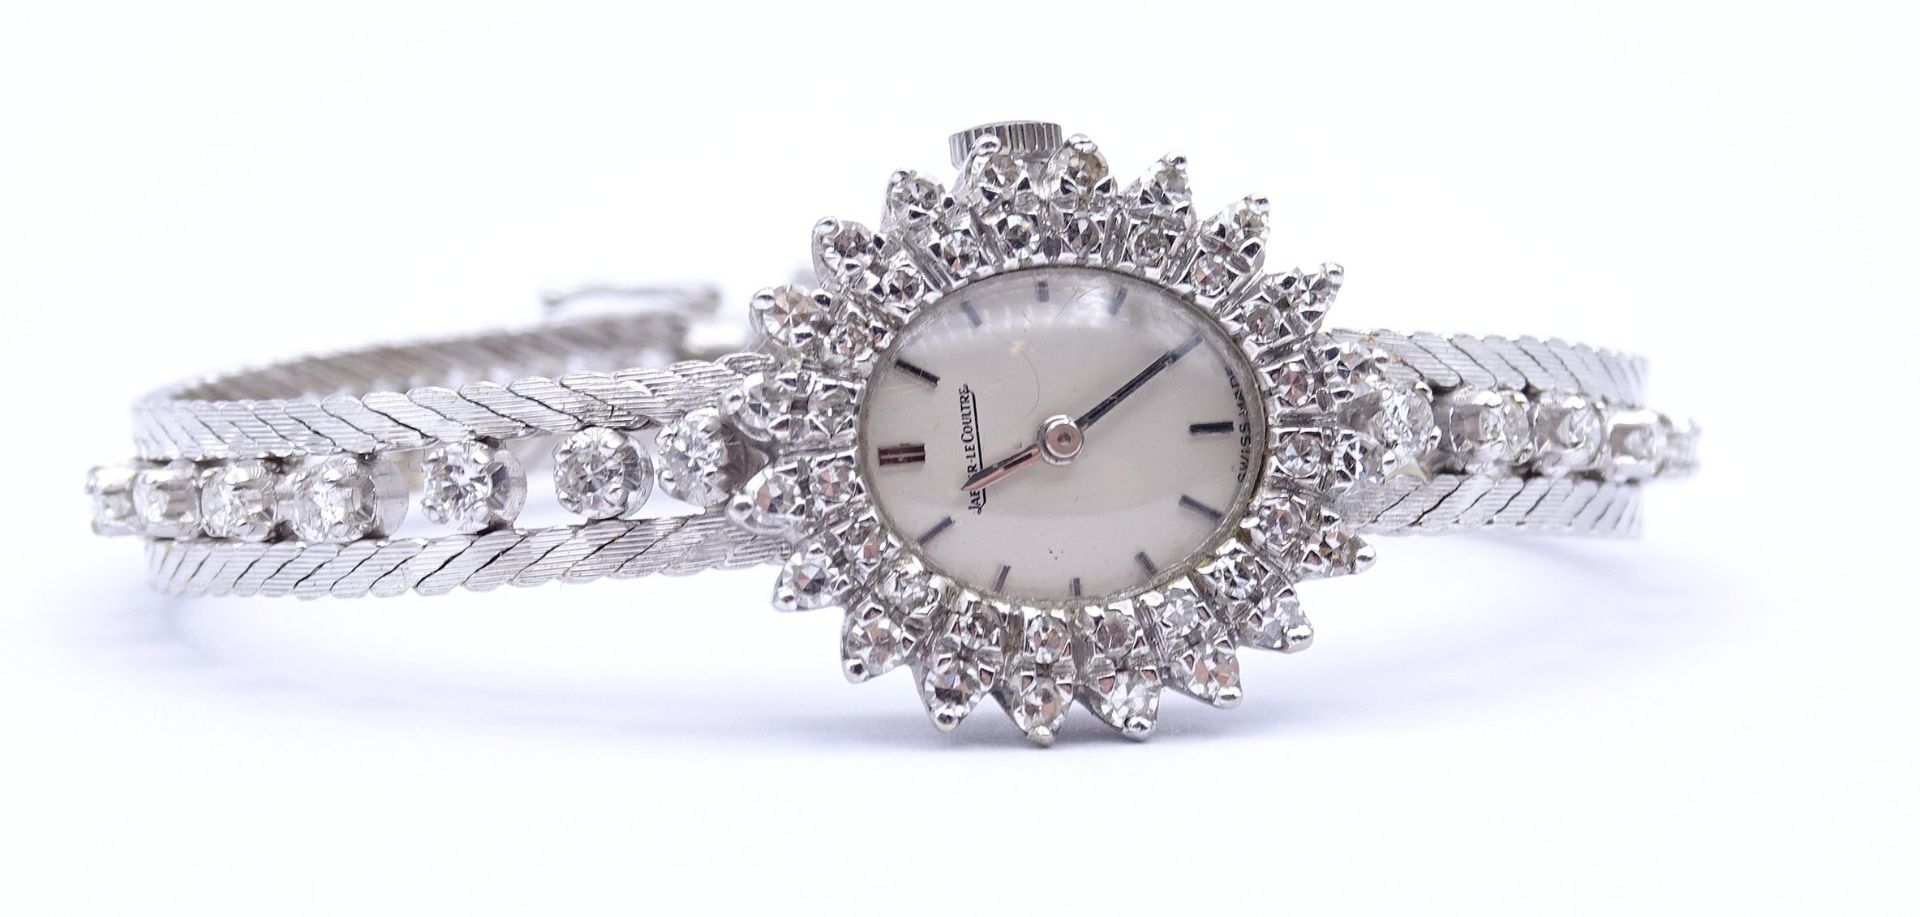 Damen Armbanduhr Jaeger LeCoultre, WG 0.750 mit Diamanten, mechanisch, Werk läuft, Diamanten zus.ca - Bild 4 aus 10